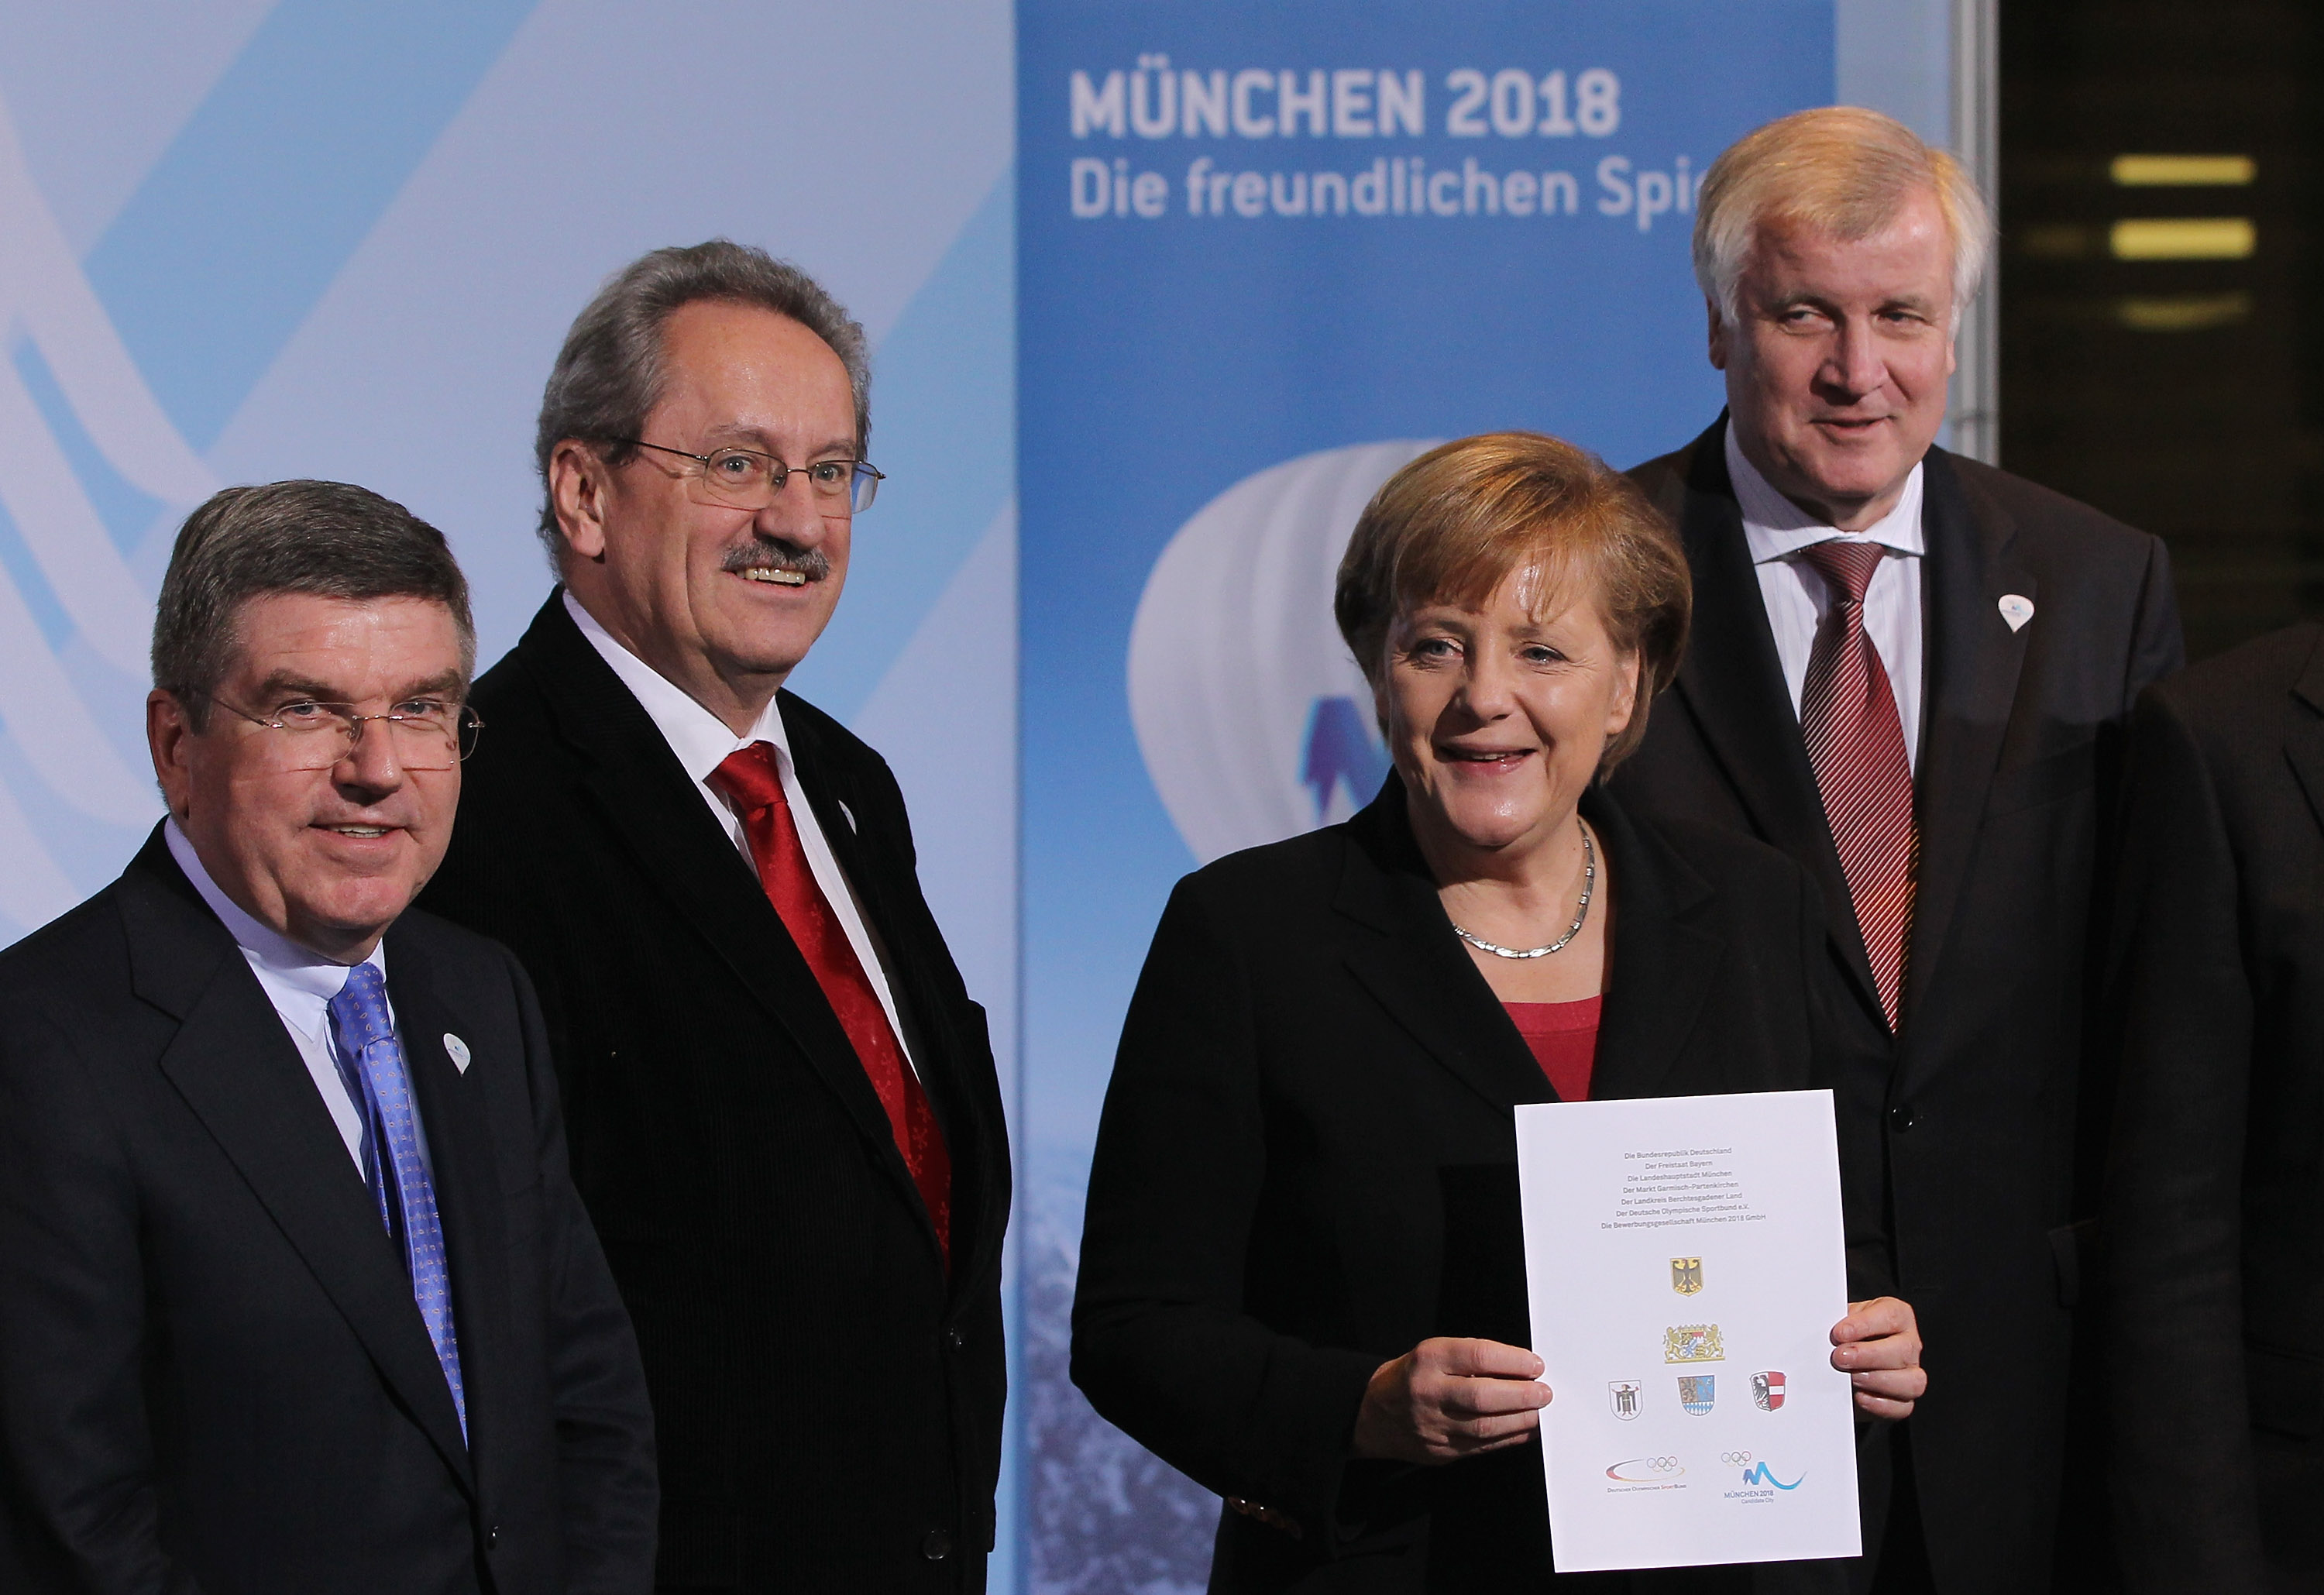 Angela_Merkel_backing_Munich_2018